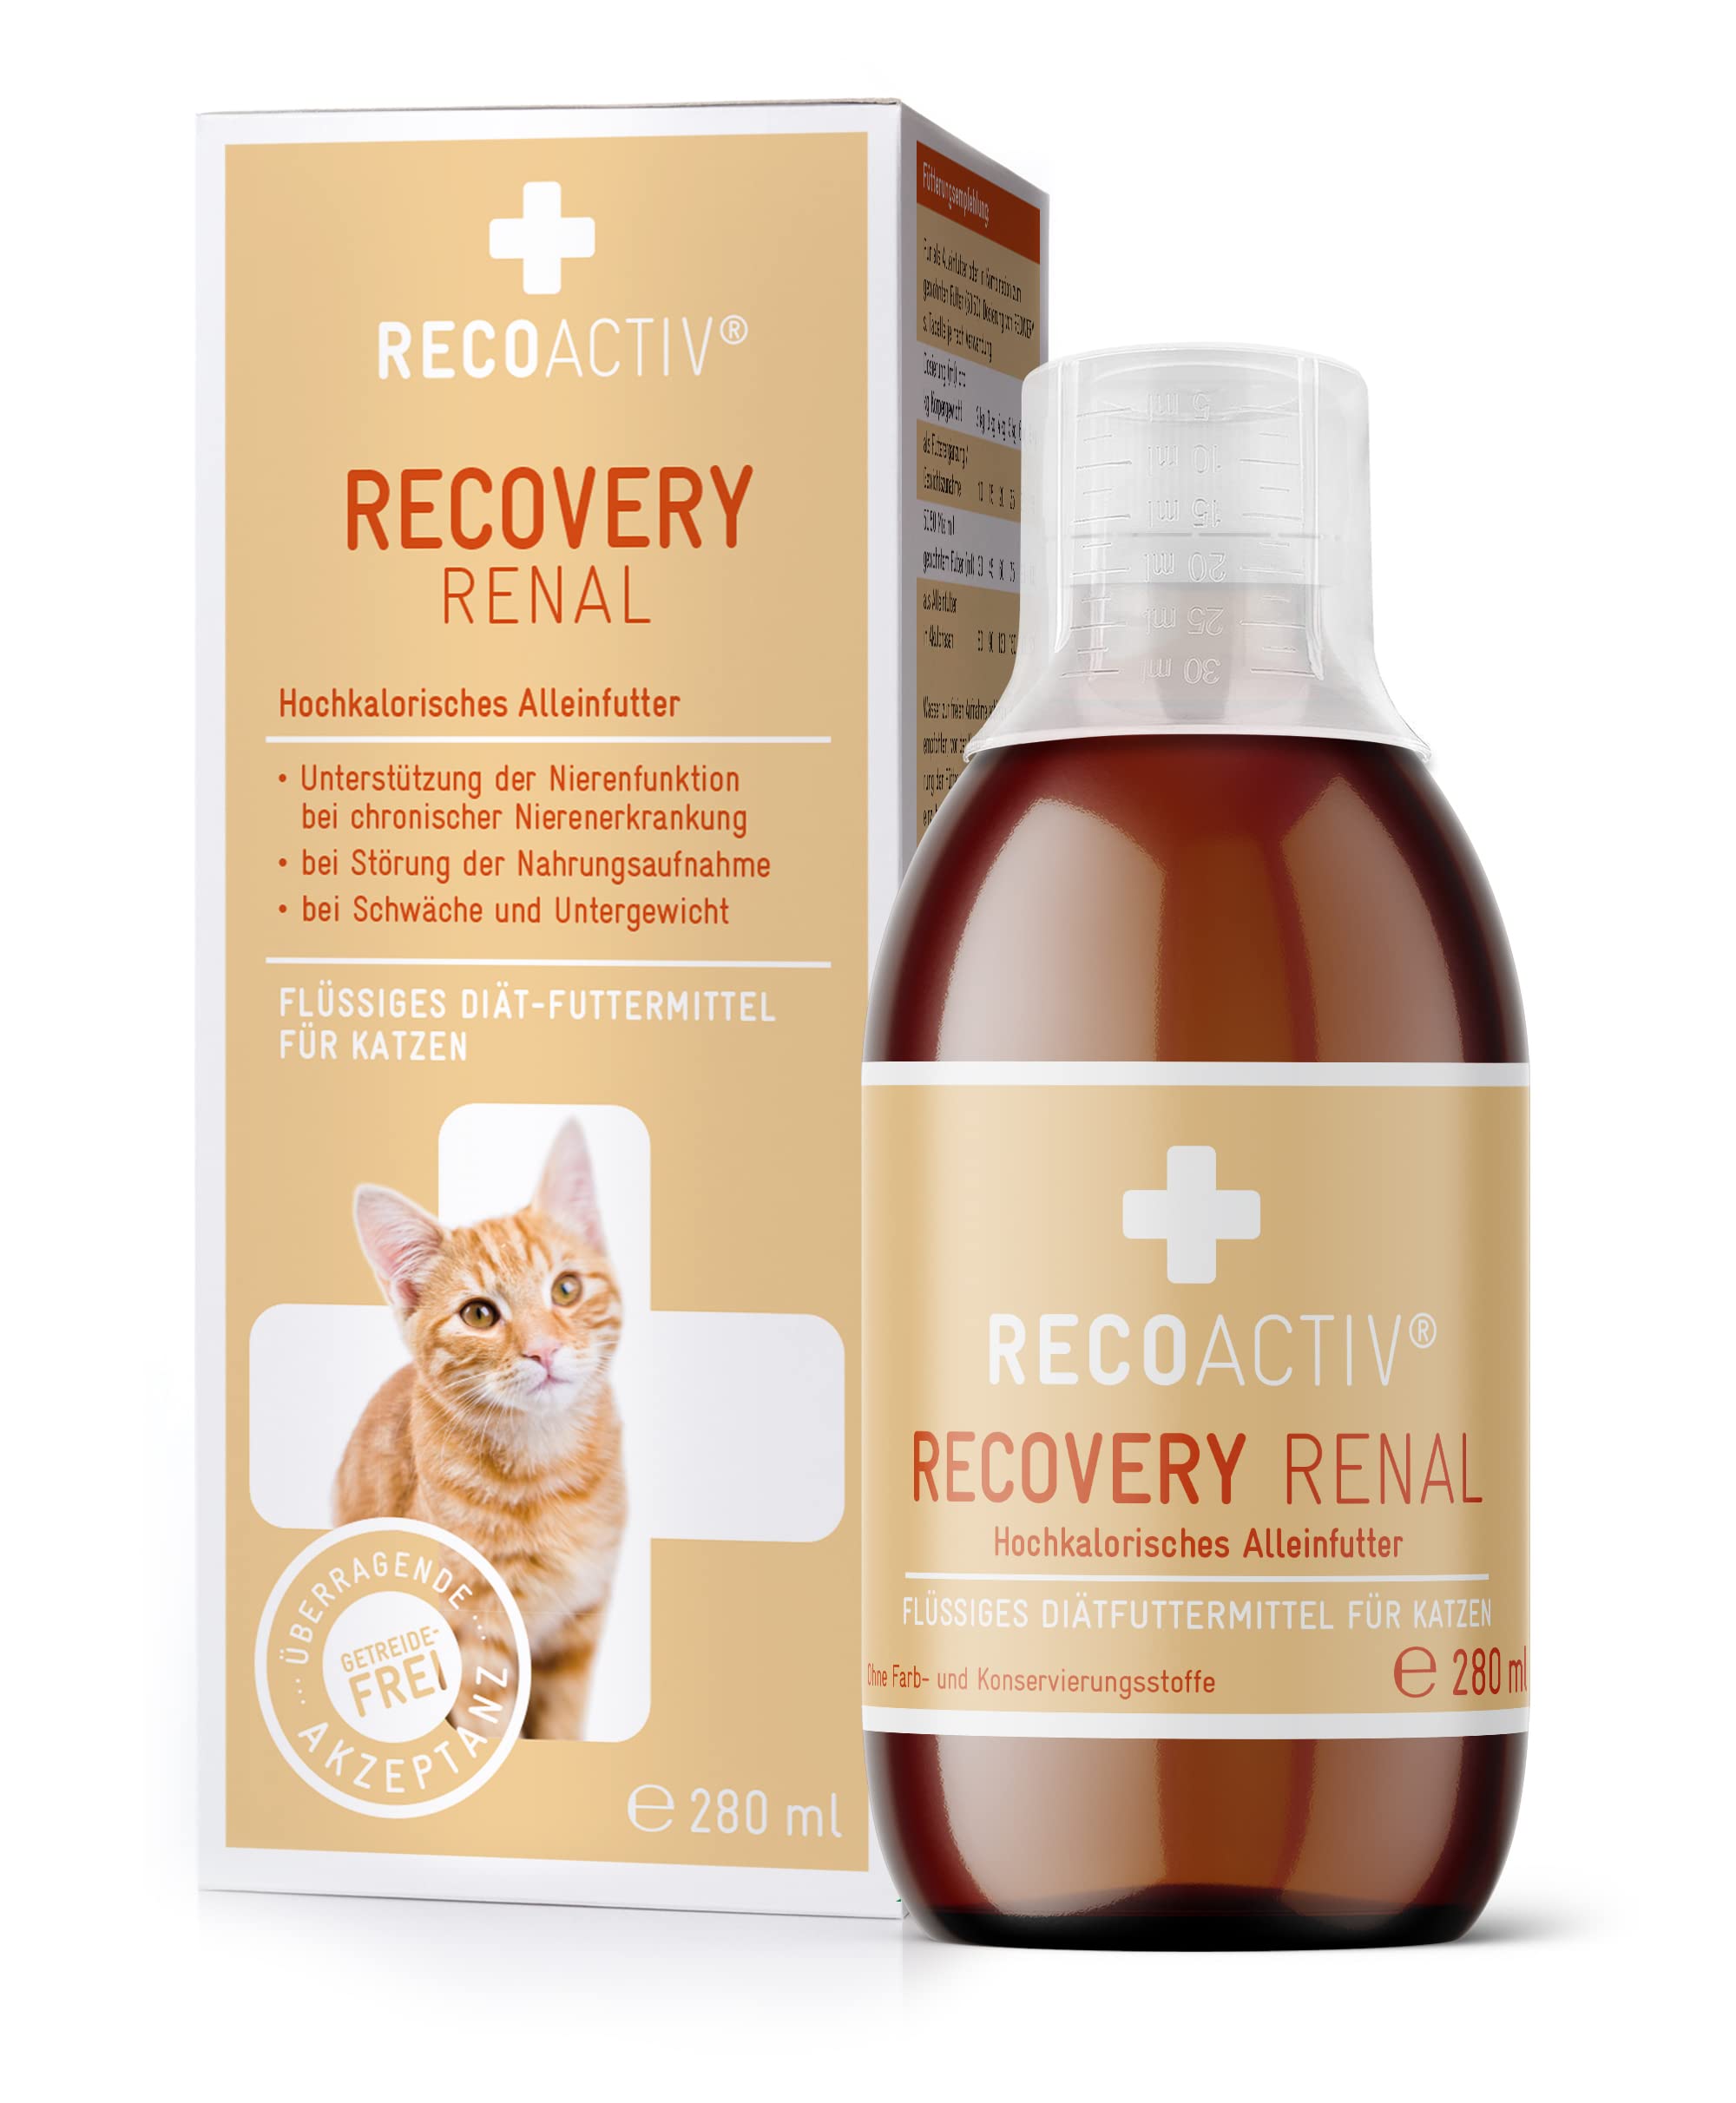 RECOACTIV Recovery Renal für Katzen, 1 x 280ml, hochkalorisches Diät-Alleinfuttermittel bei Nierenfunktionsstörungen und erhöhtem Energiebedarf in der Rekonvaleszenz, zur Gewichtszunahme